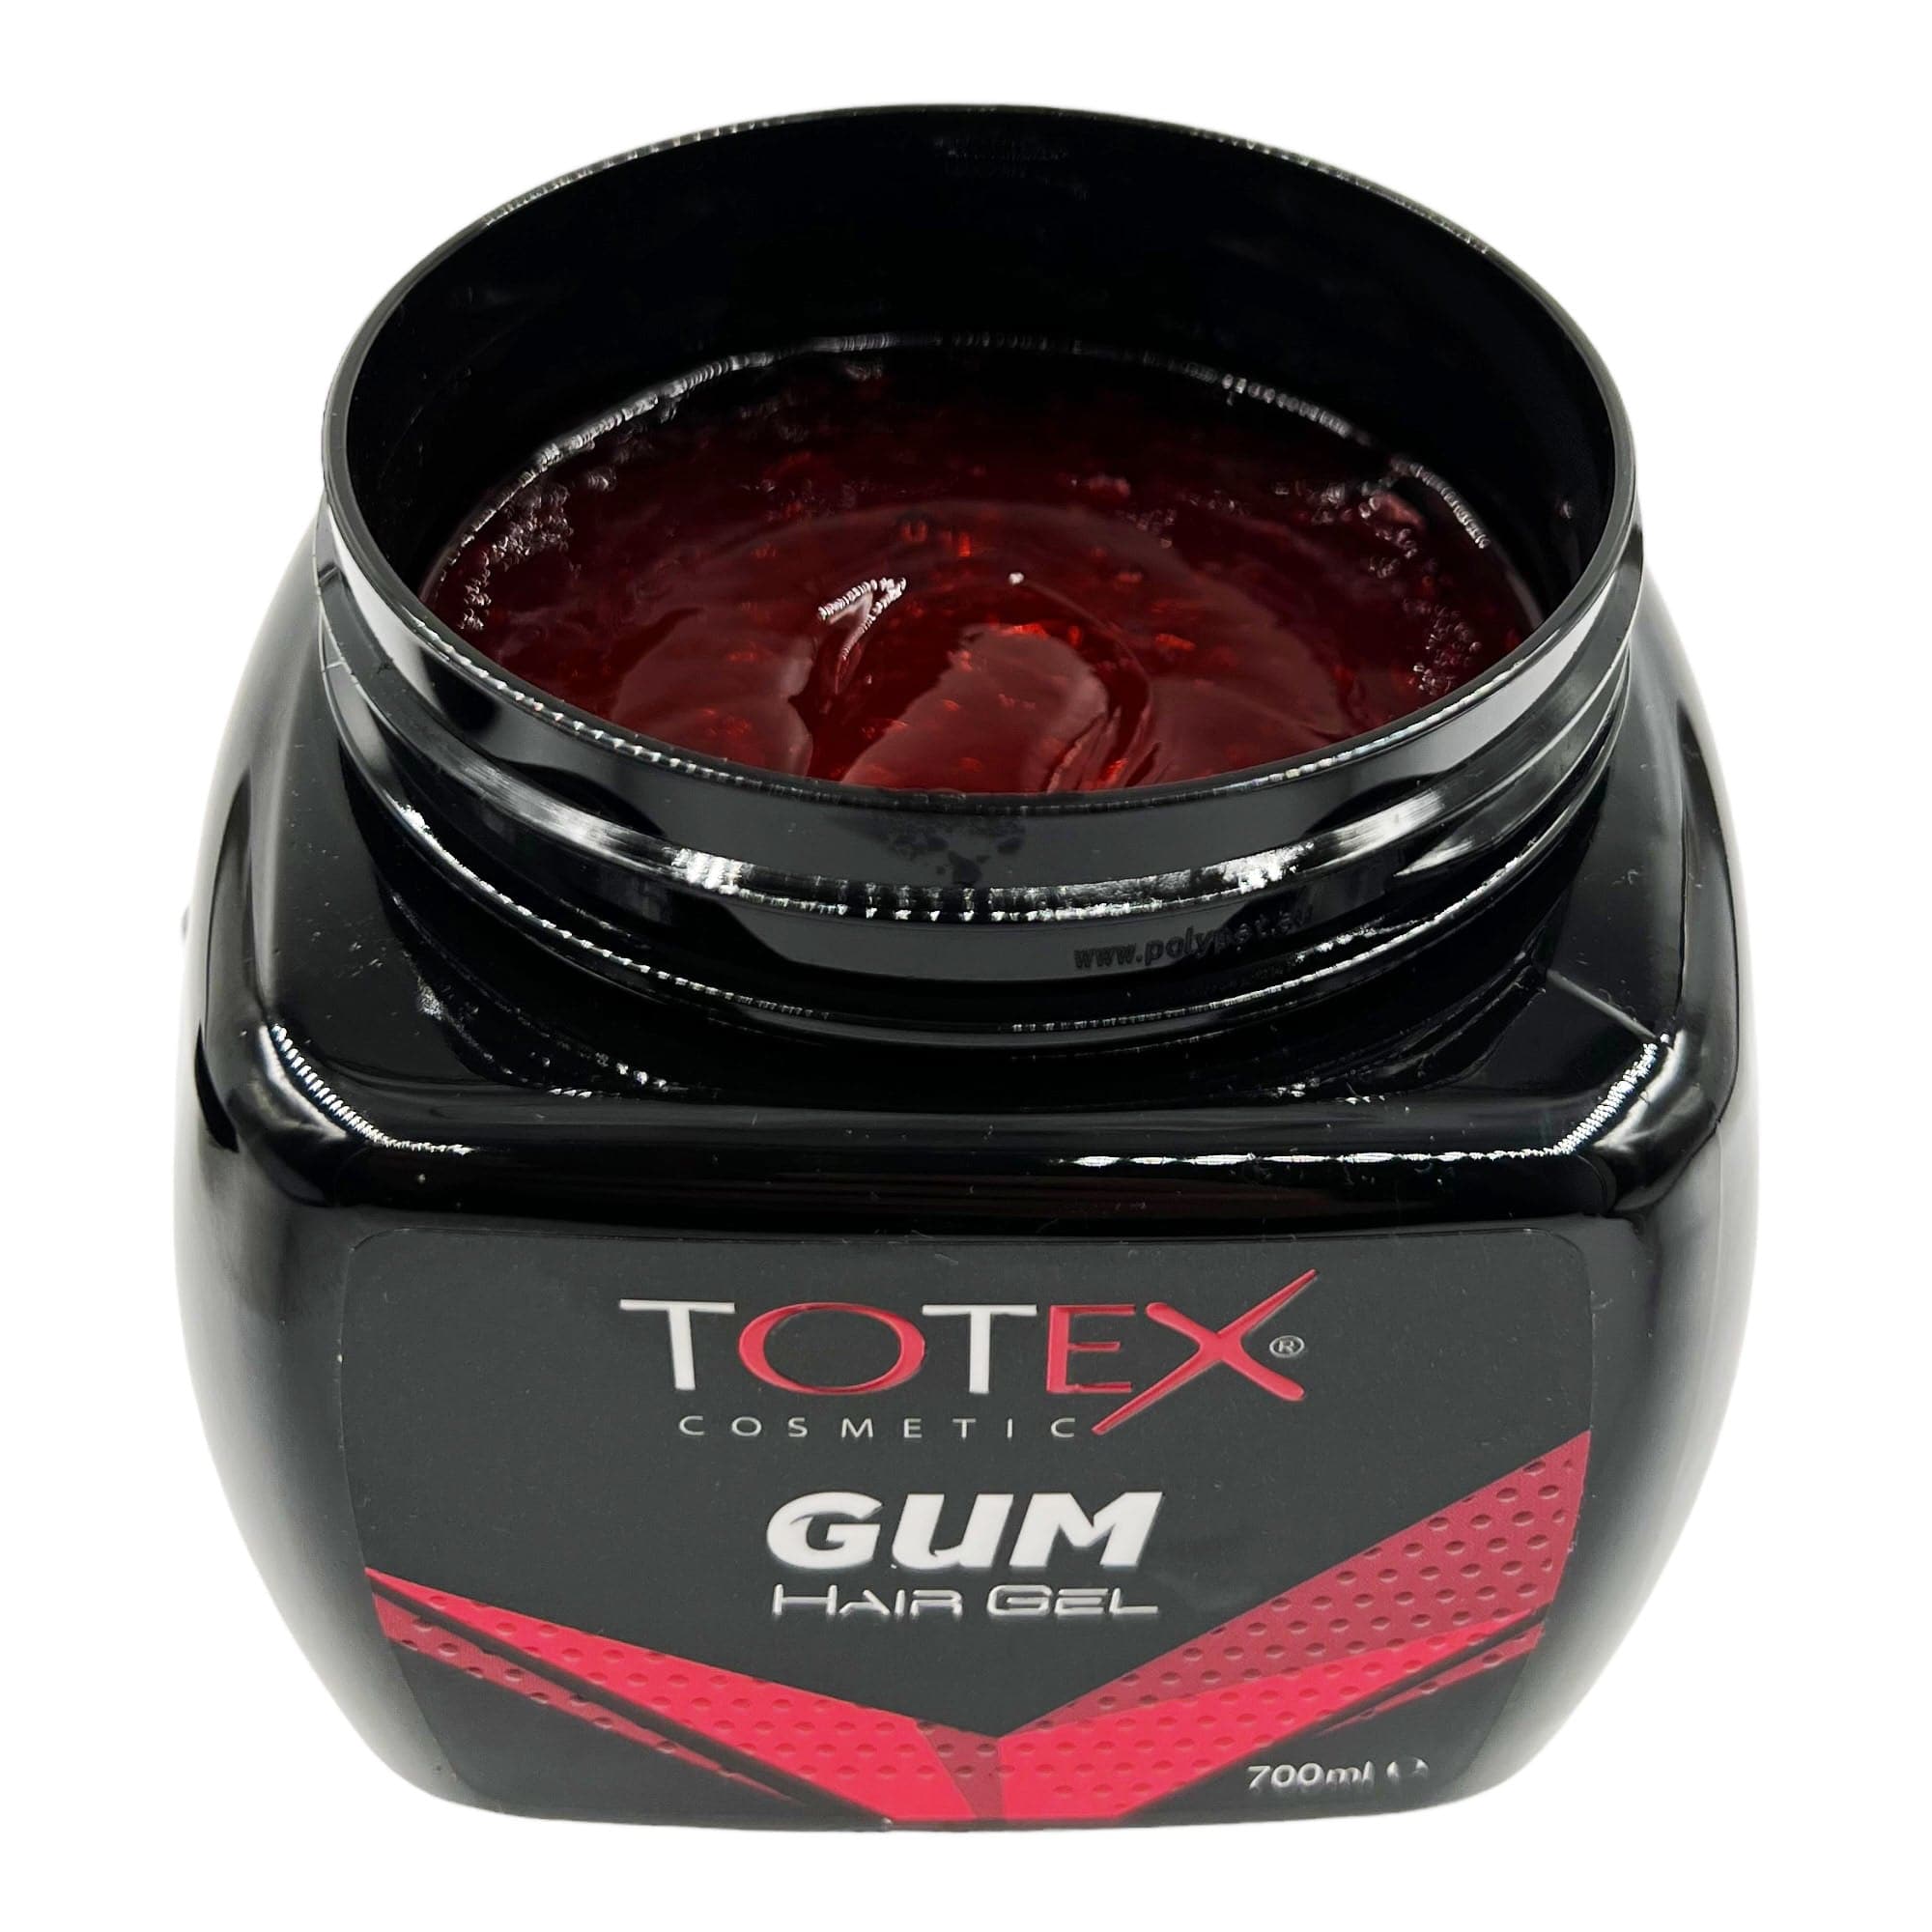 Totex - Hair Gel Gum 700ml